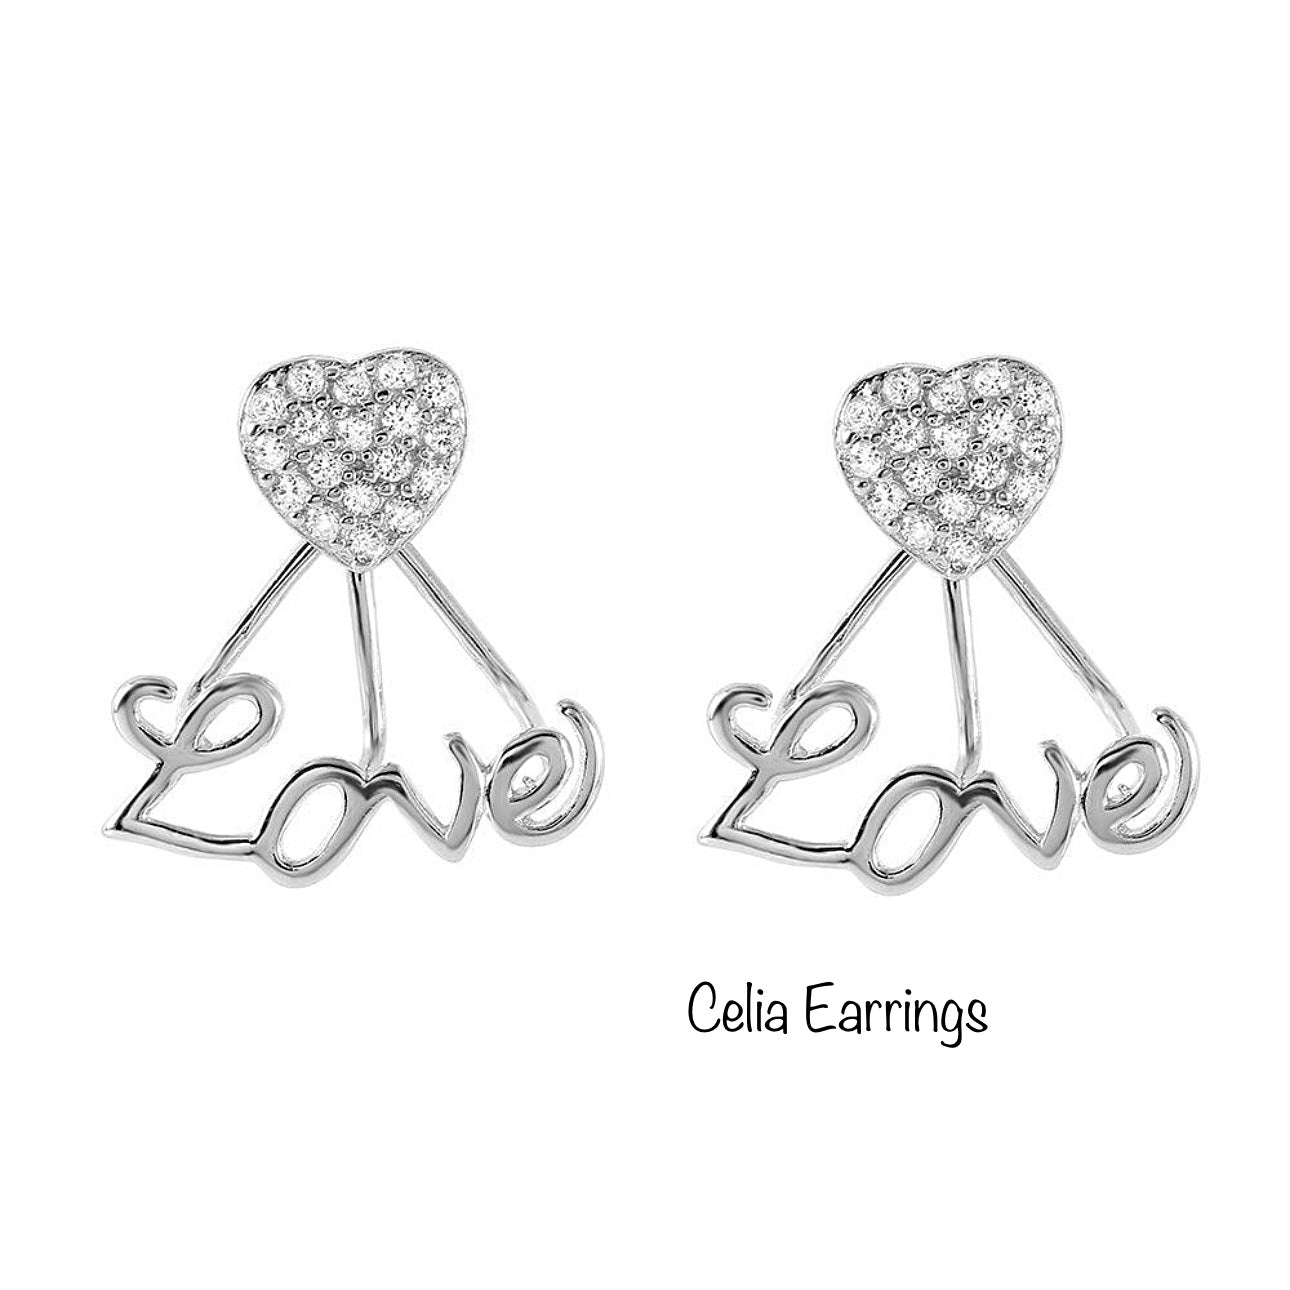 Celia Earrings